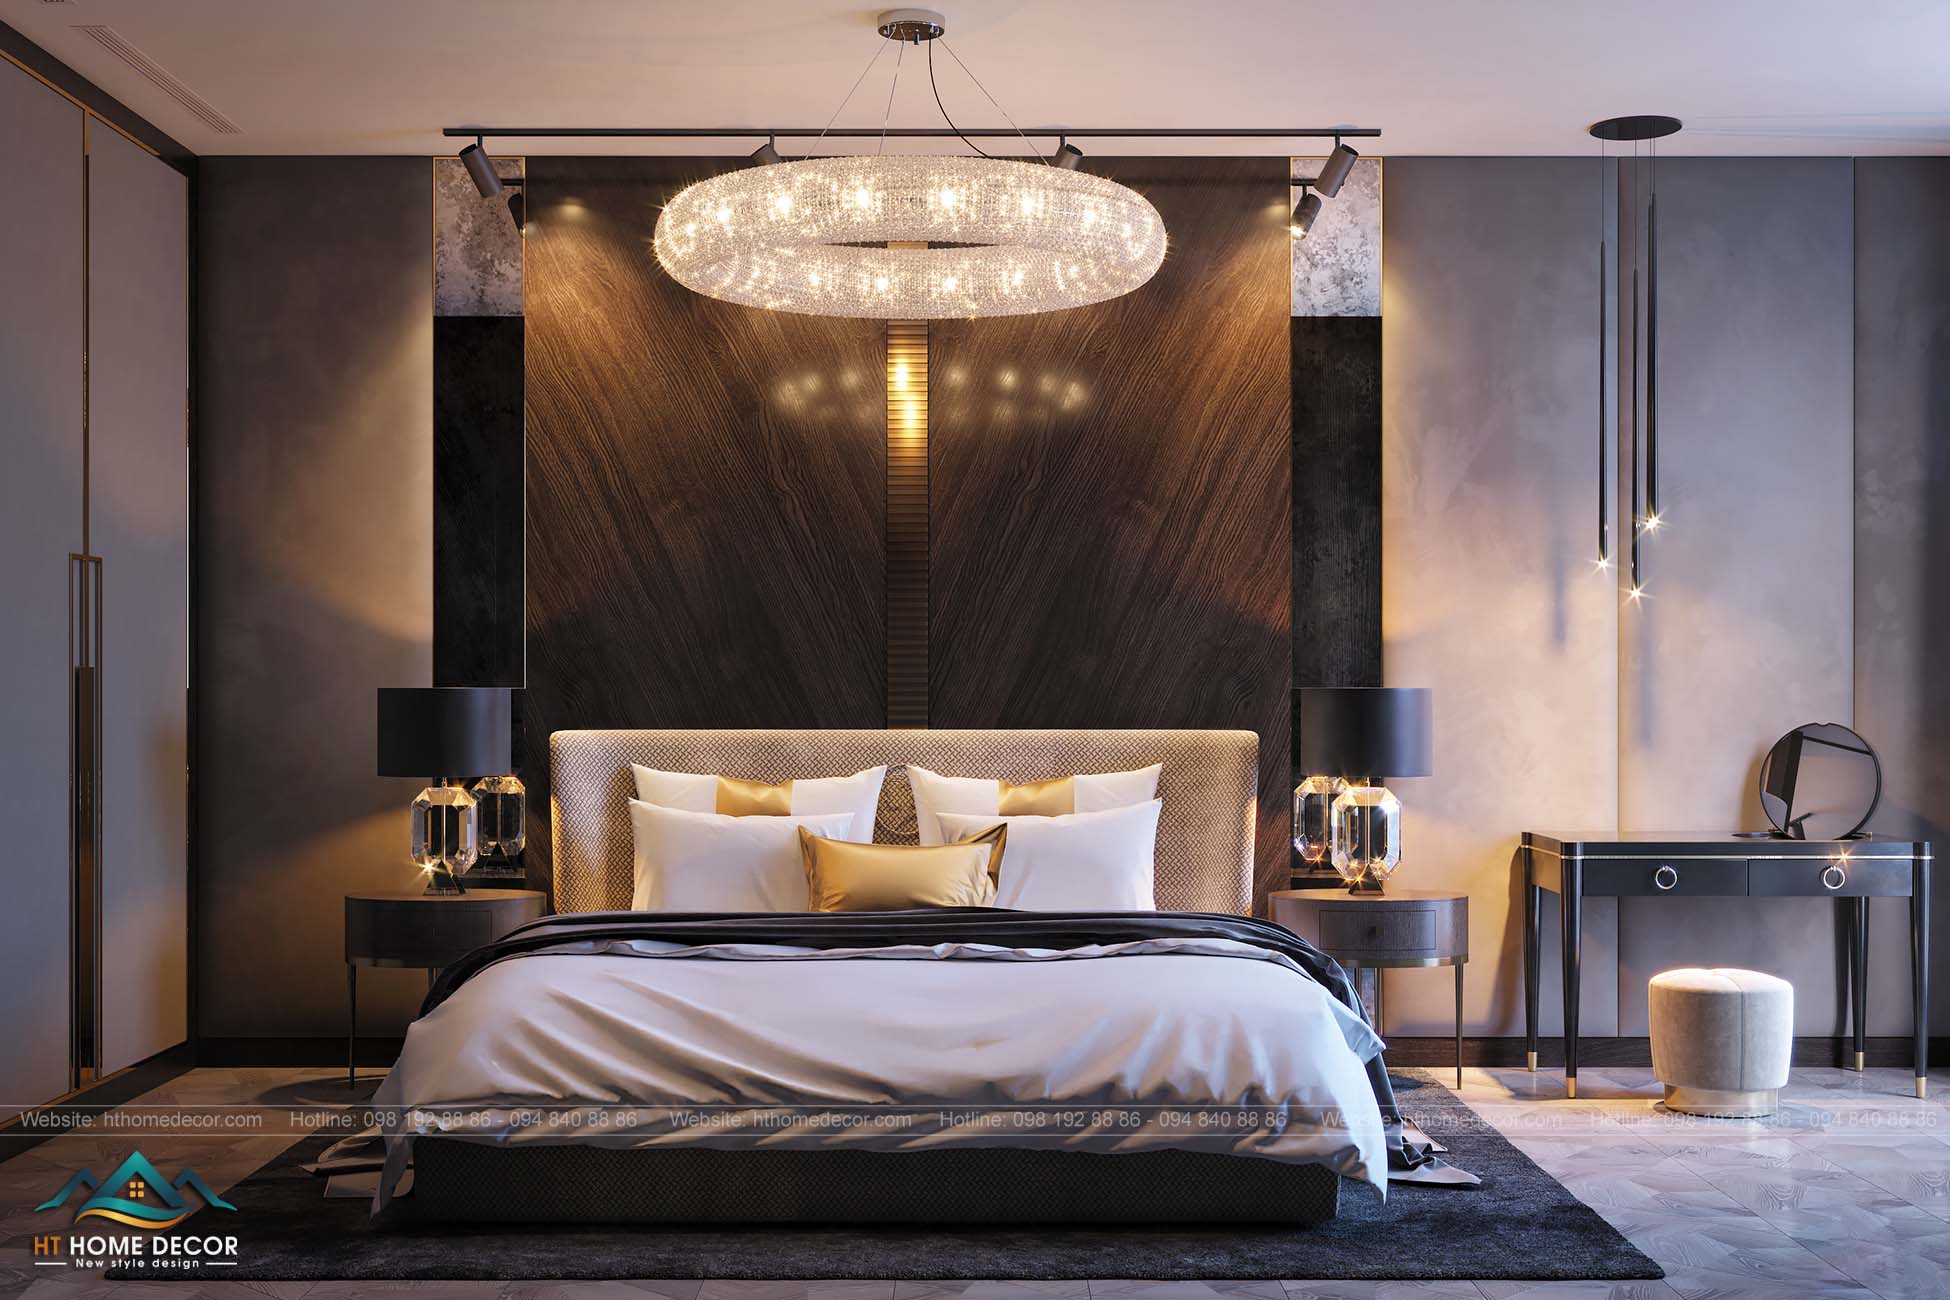 Phòng ngủ thứ 2 có thiết kế đơn giản hơn với giường và nệm màu trắng, ánh sáng tự nhiên hắt qua khung cửa kính - nội thất căn hộ Châu Âu